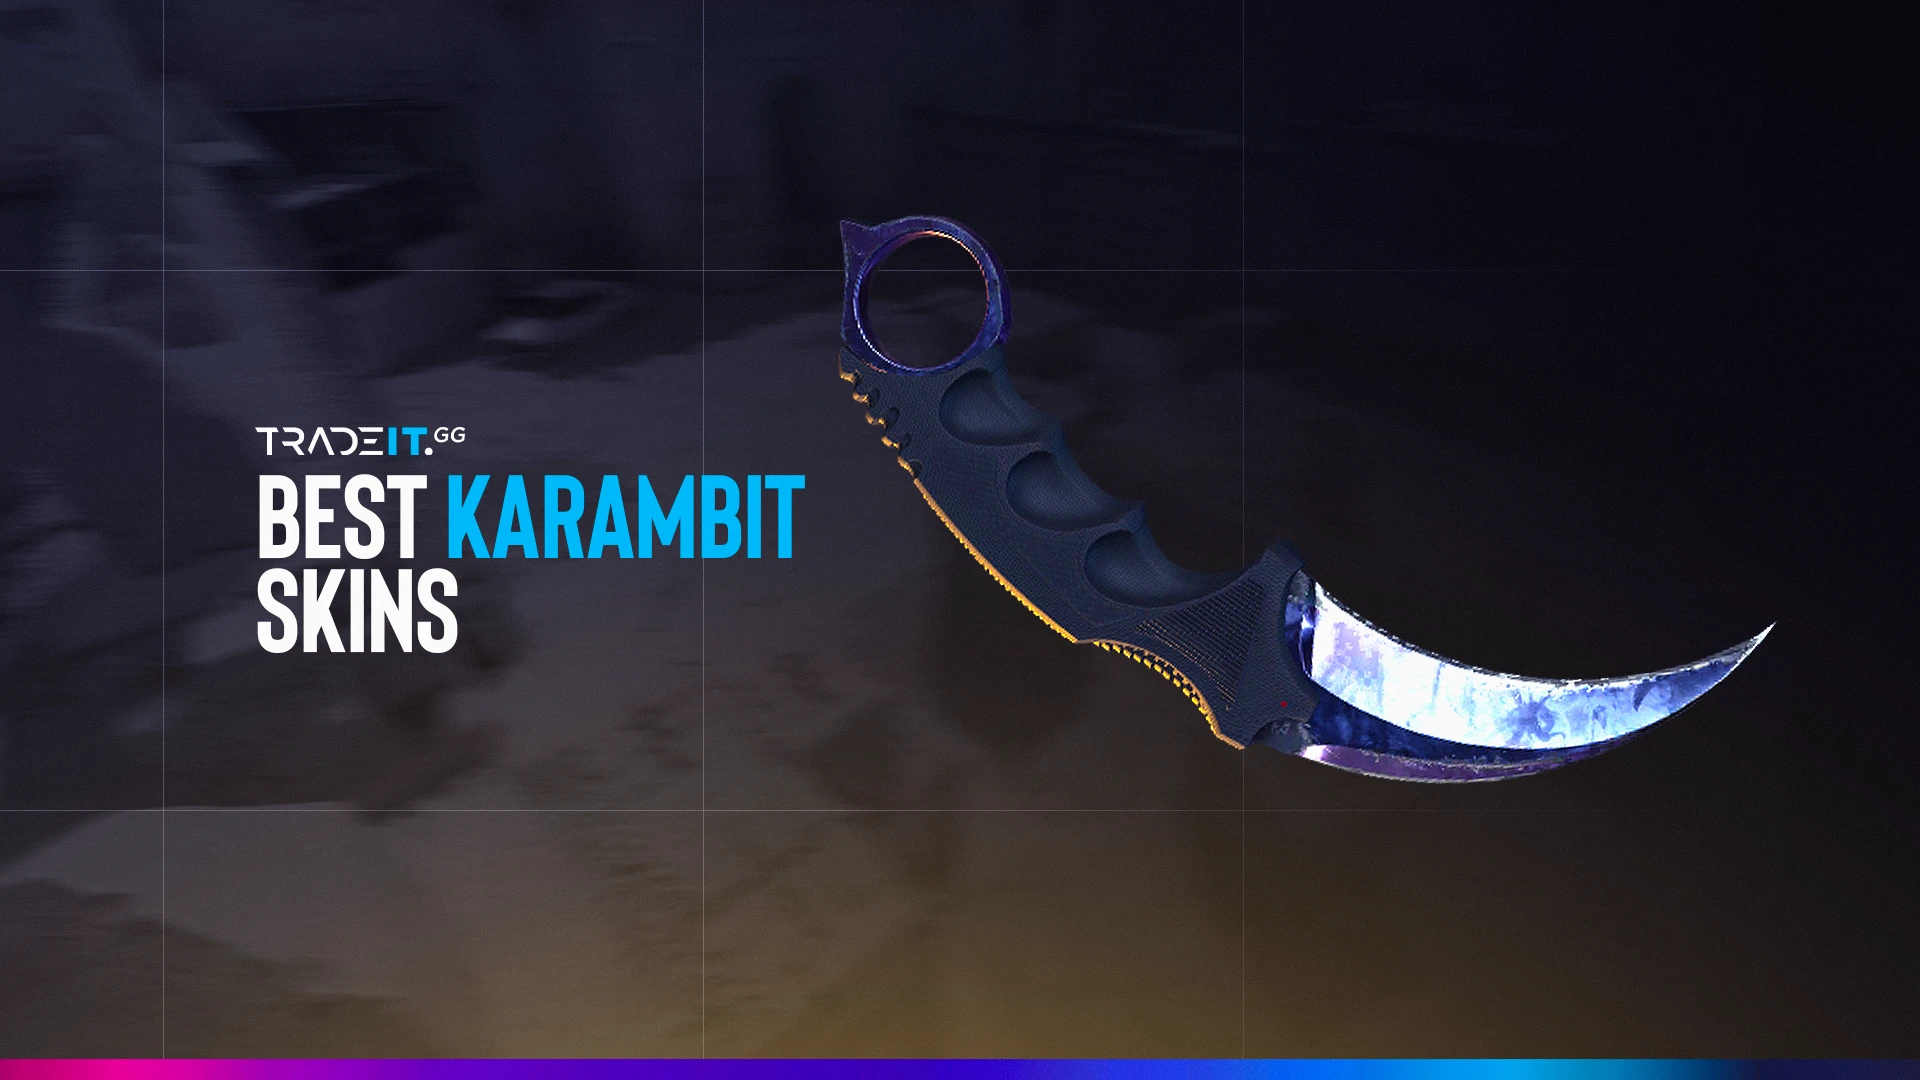 Best Karambit Knife Skins in CS2 - TOP 10